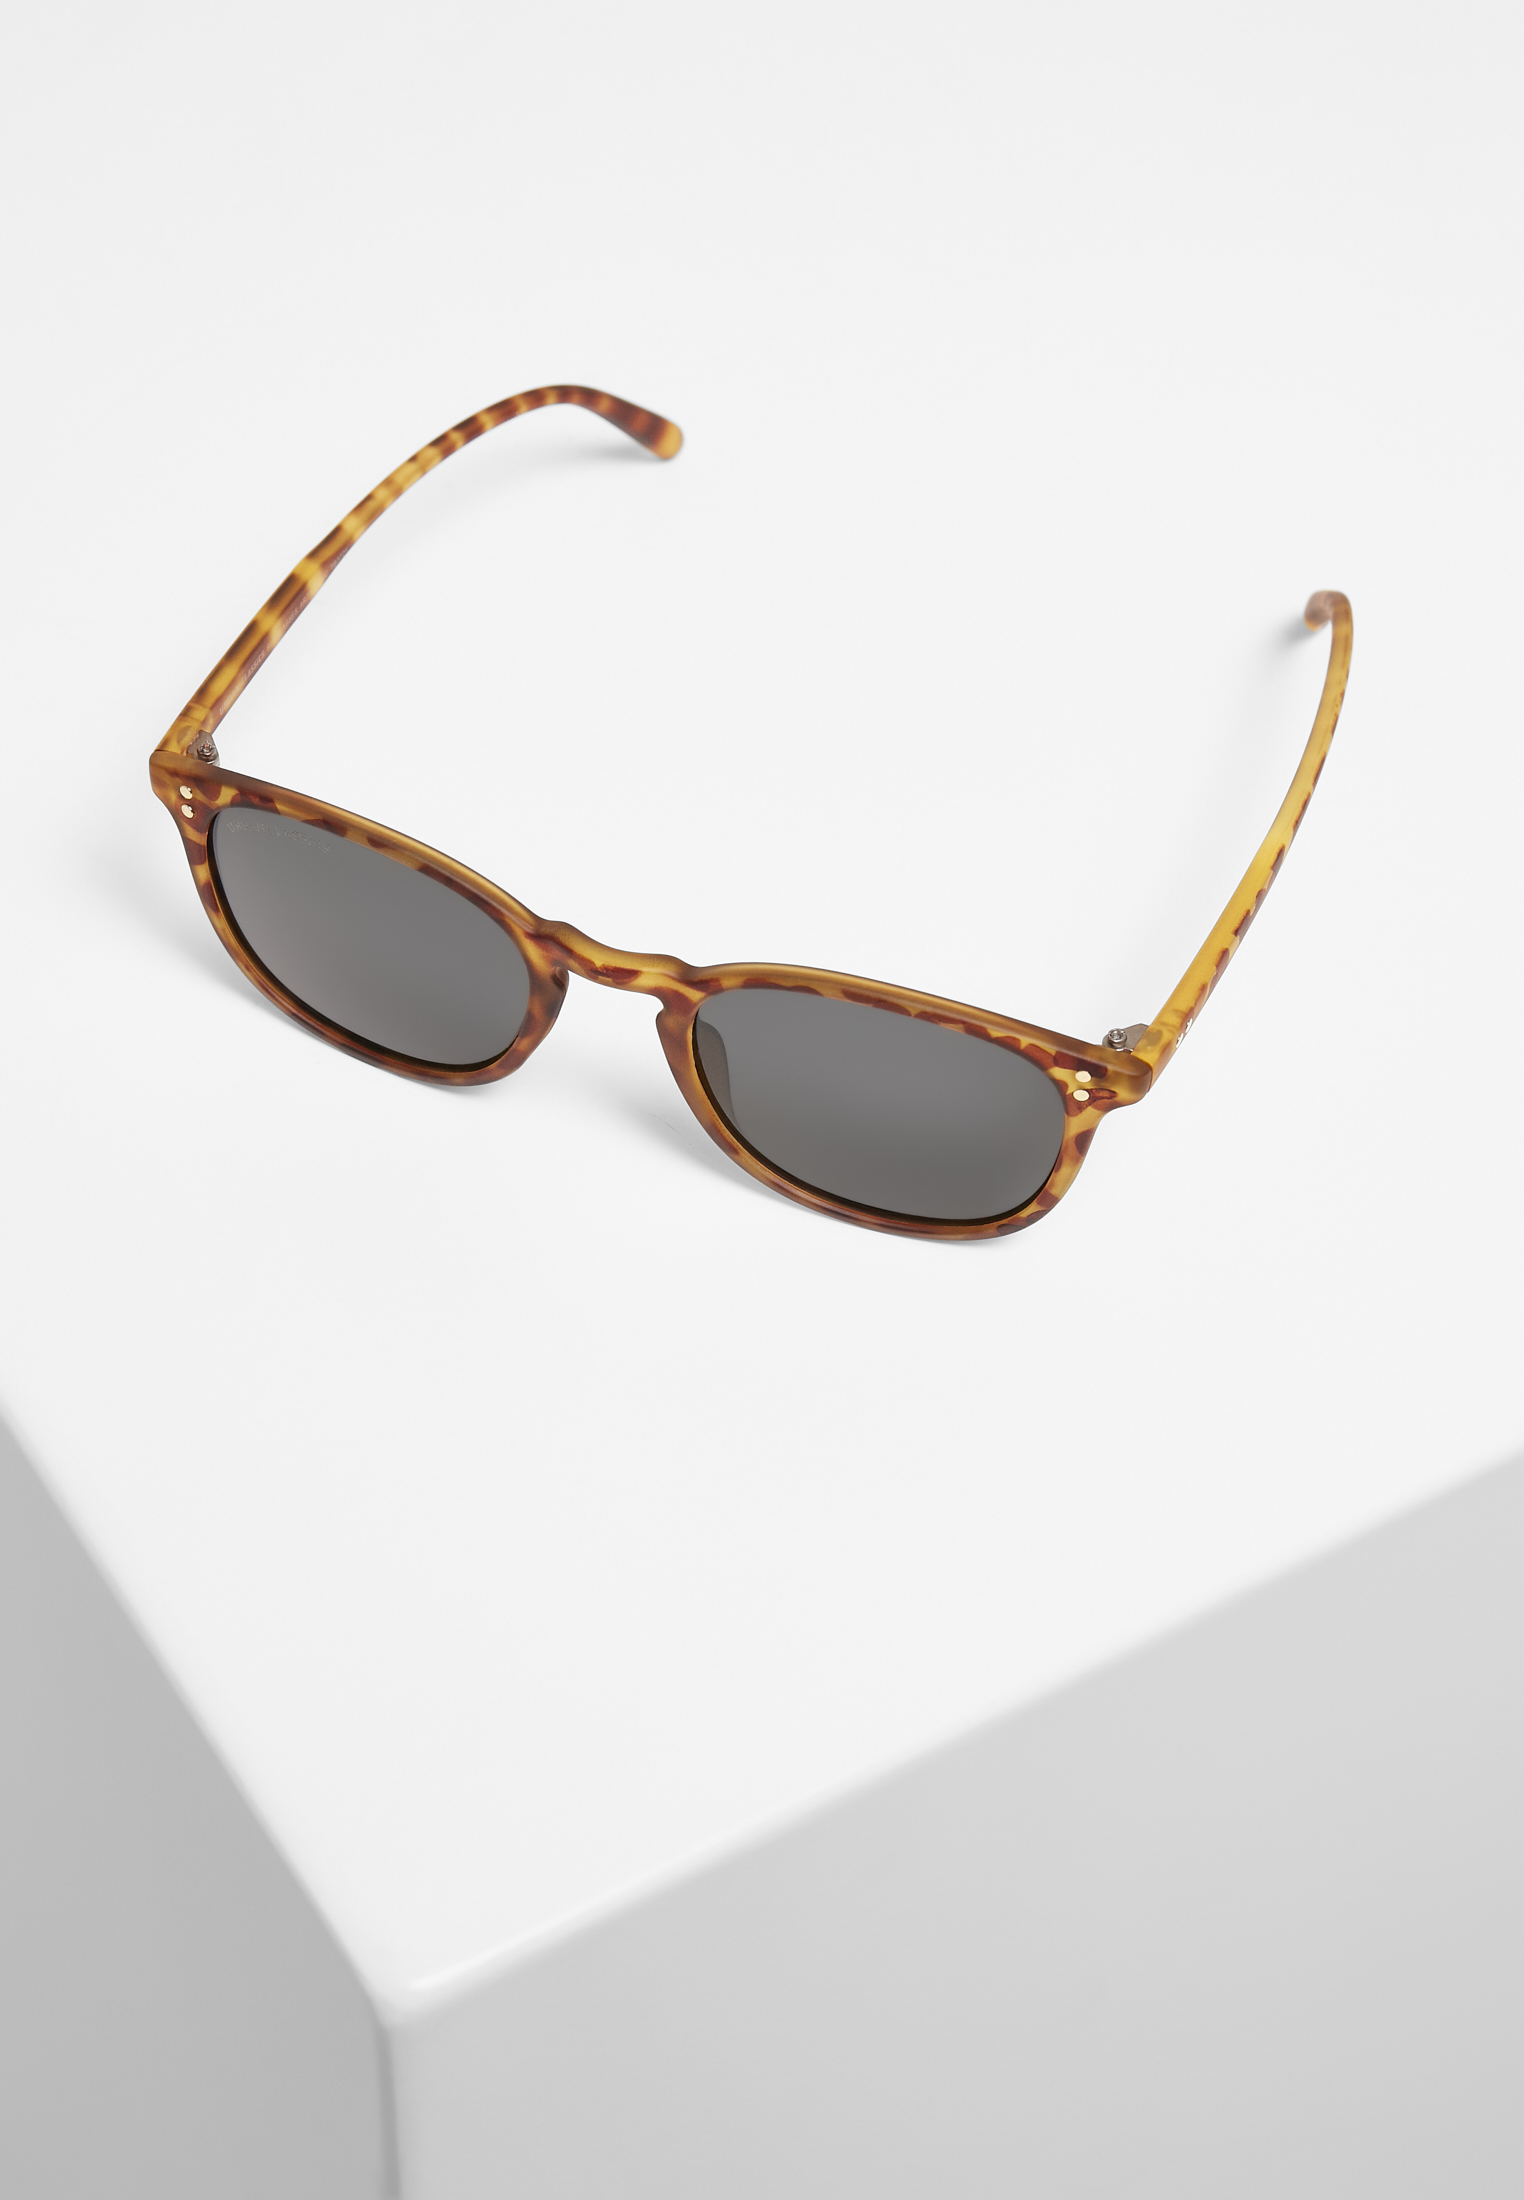 Sonnenbrillen Sunglasses Arthur UC in Farbe brown leo/grey